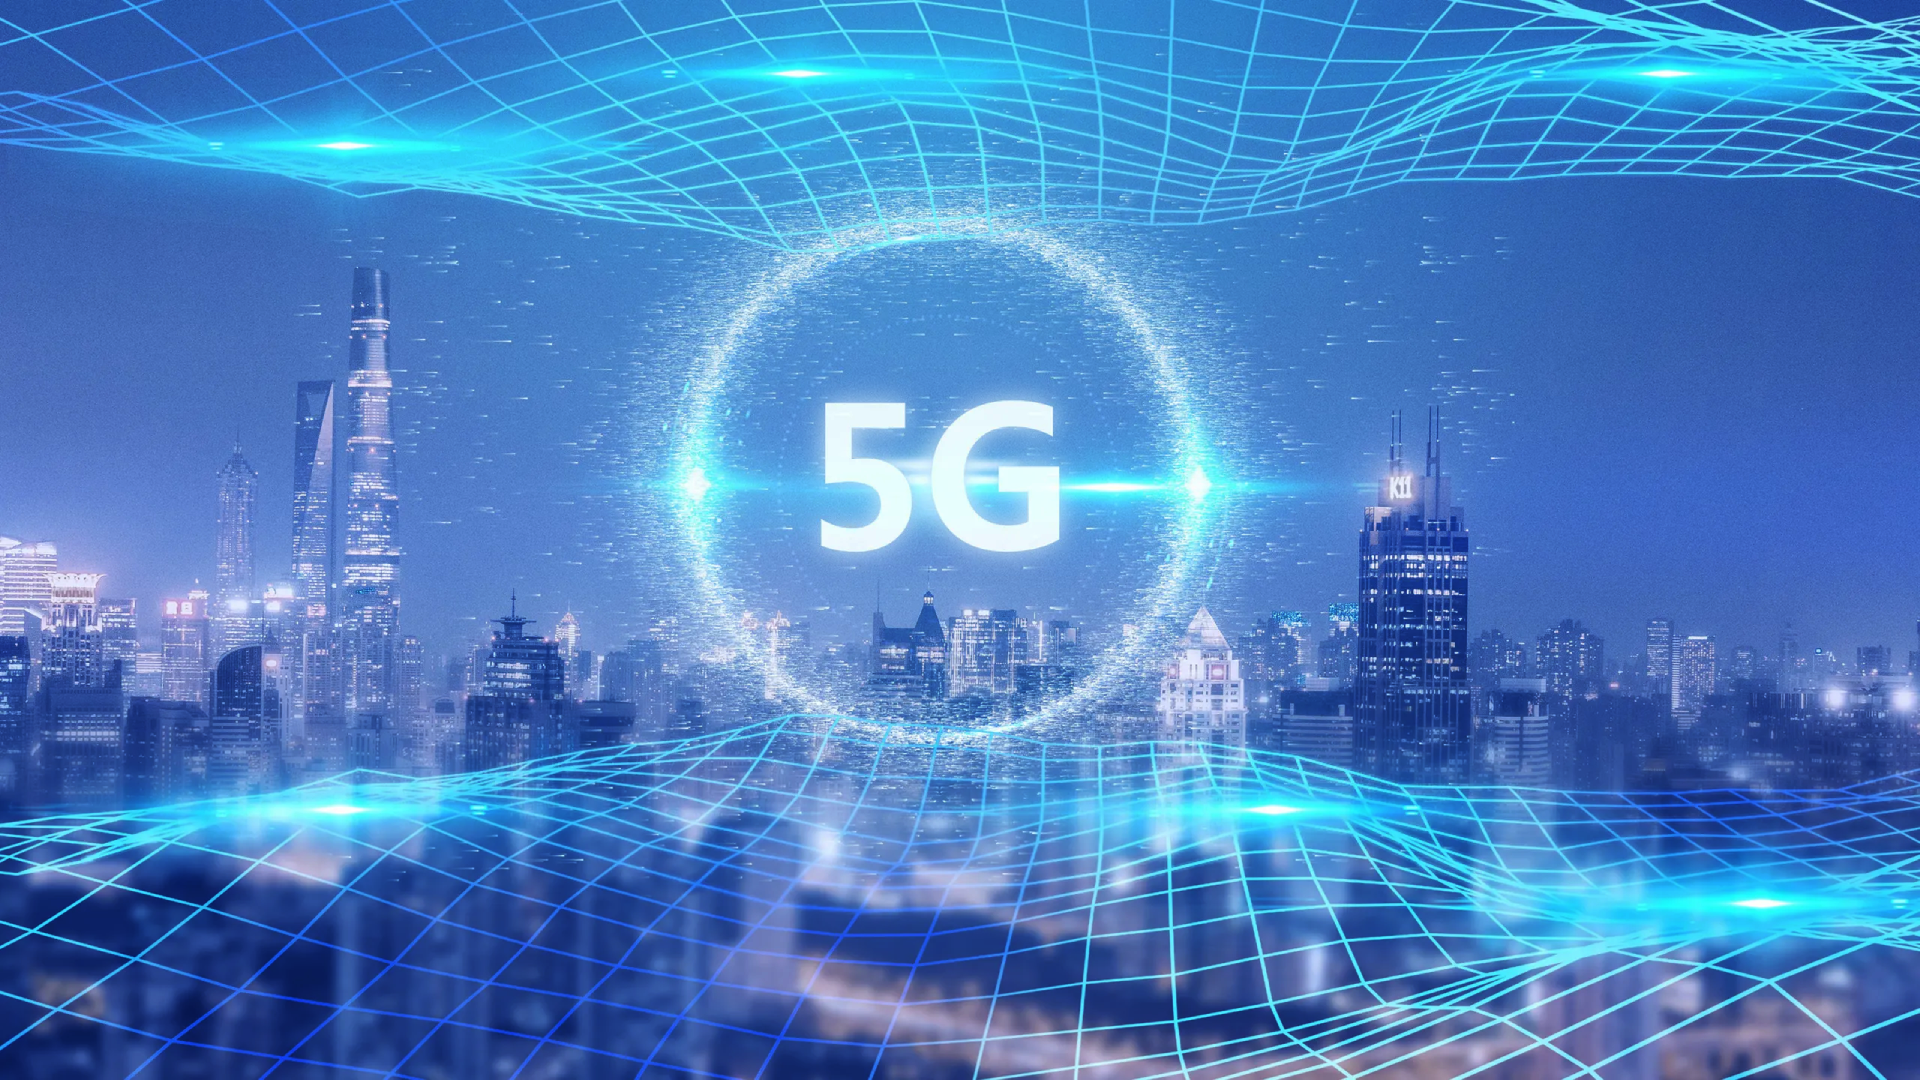 ciudad futurista conectada mediante la tecnología 5G